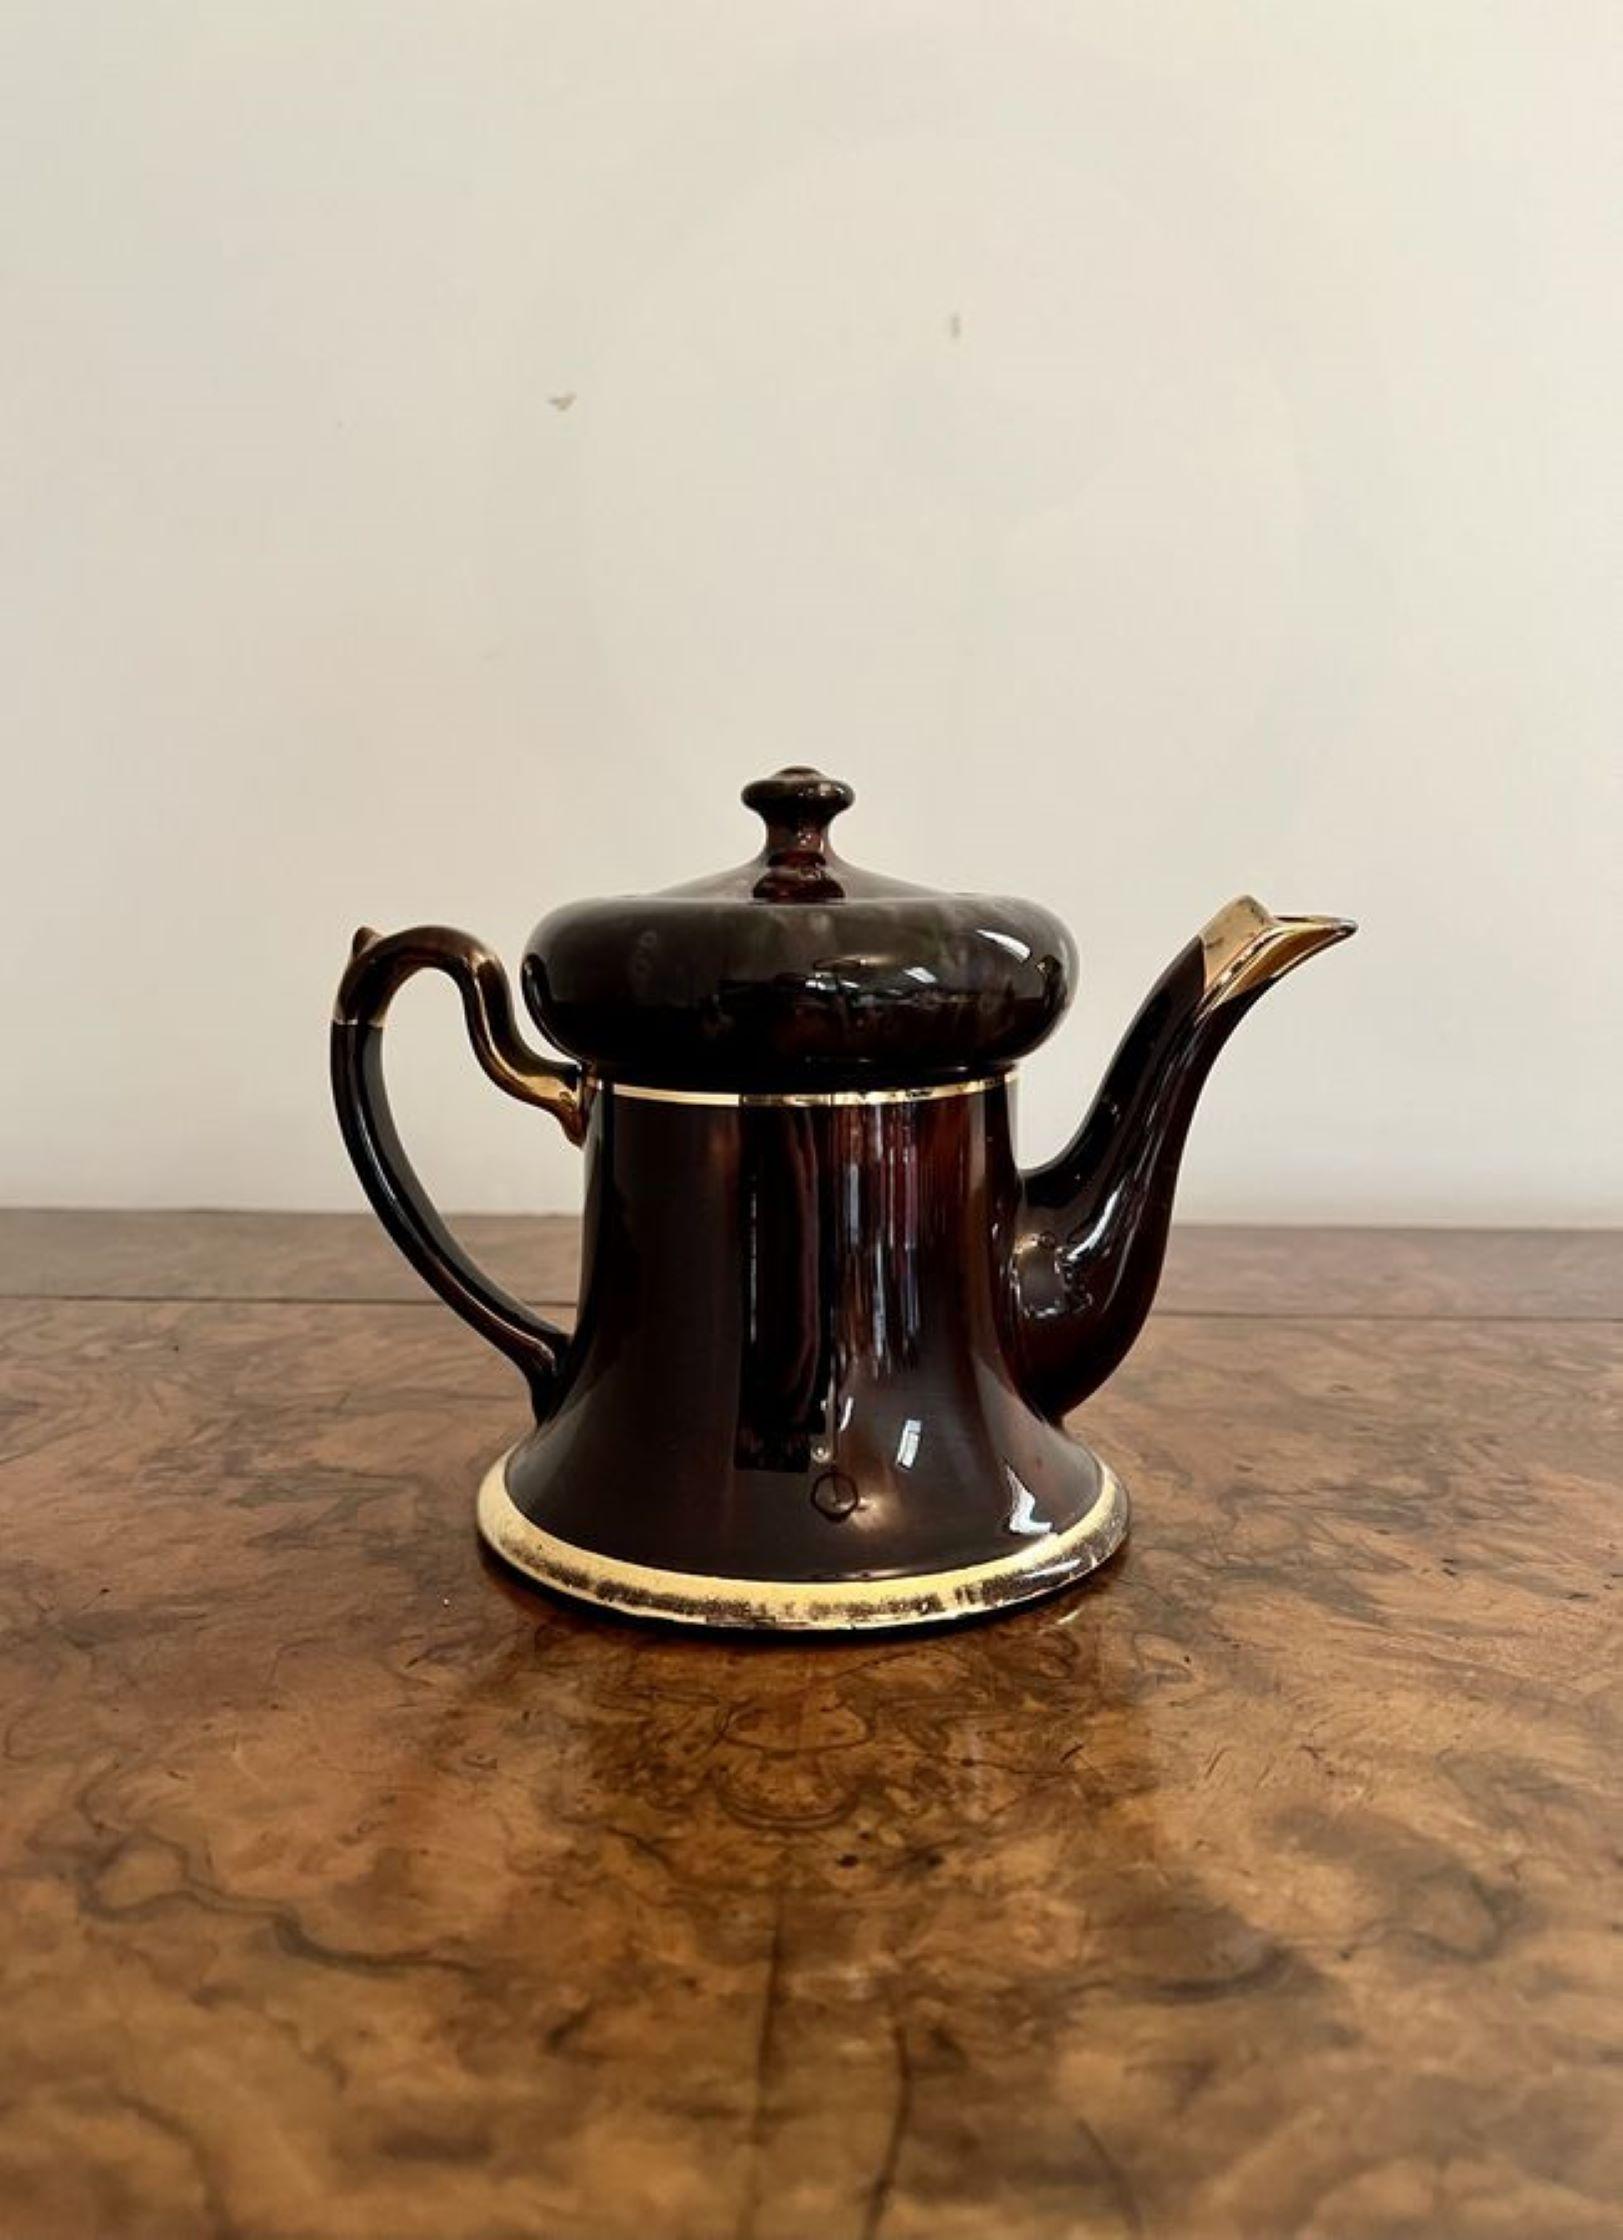 Ungewöhnliche antike Edwardian glasierte braun & Gold Teekanne mit einer Qualität braun glasiert und Gold Teekanne mit einem geformten Griff und Ausguss mit dem ursprünglichen Deckel.

D. 1900